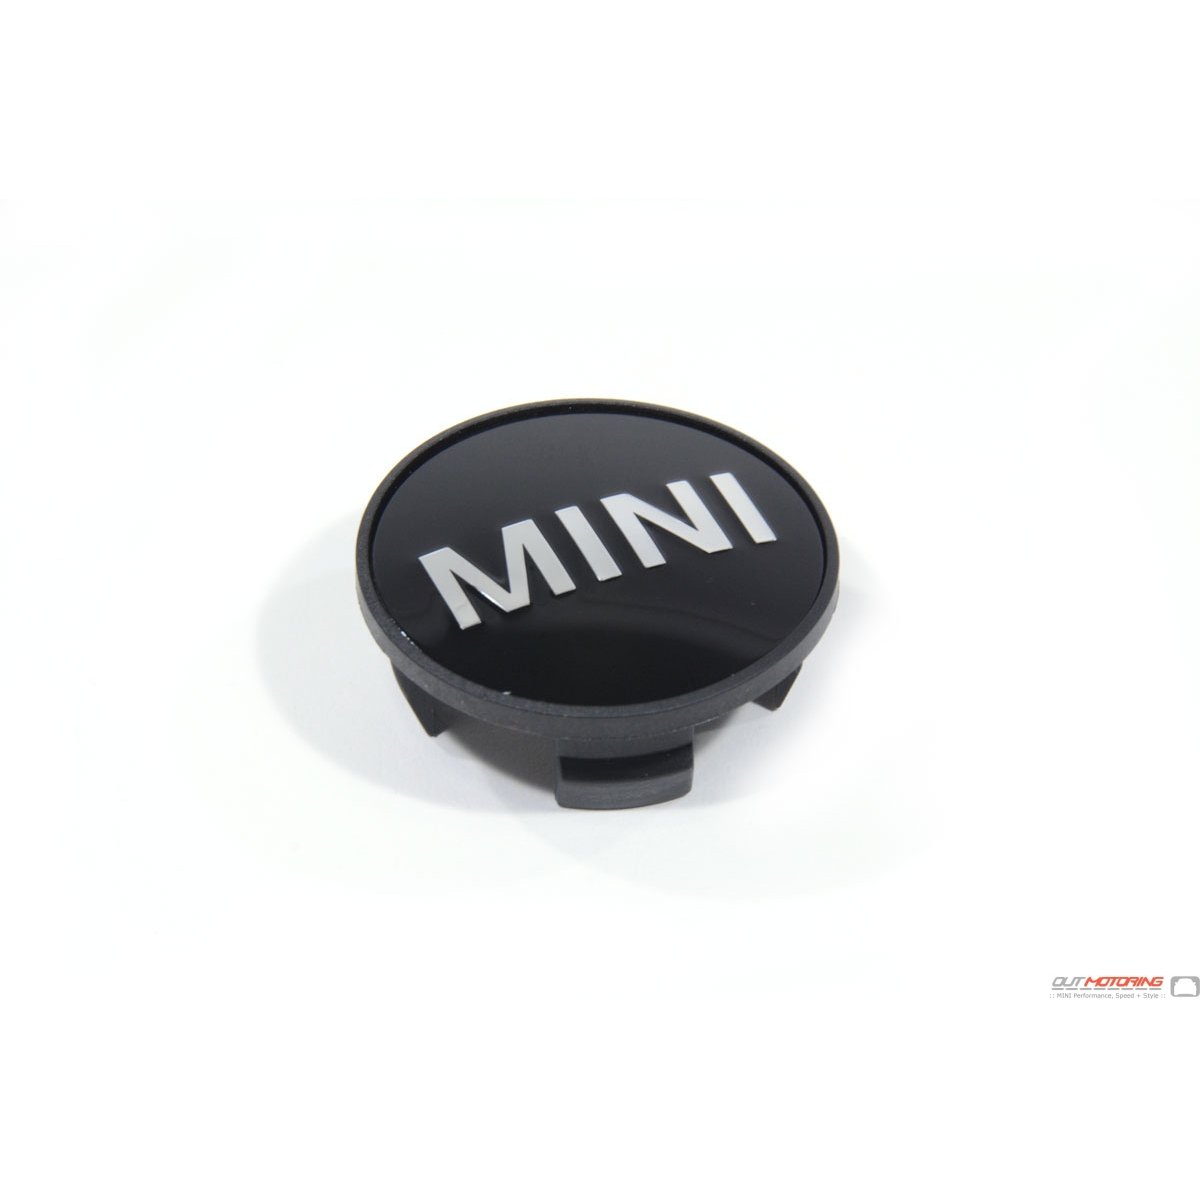 Mini Cooper S Wheel Centre Caps